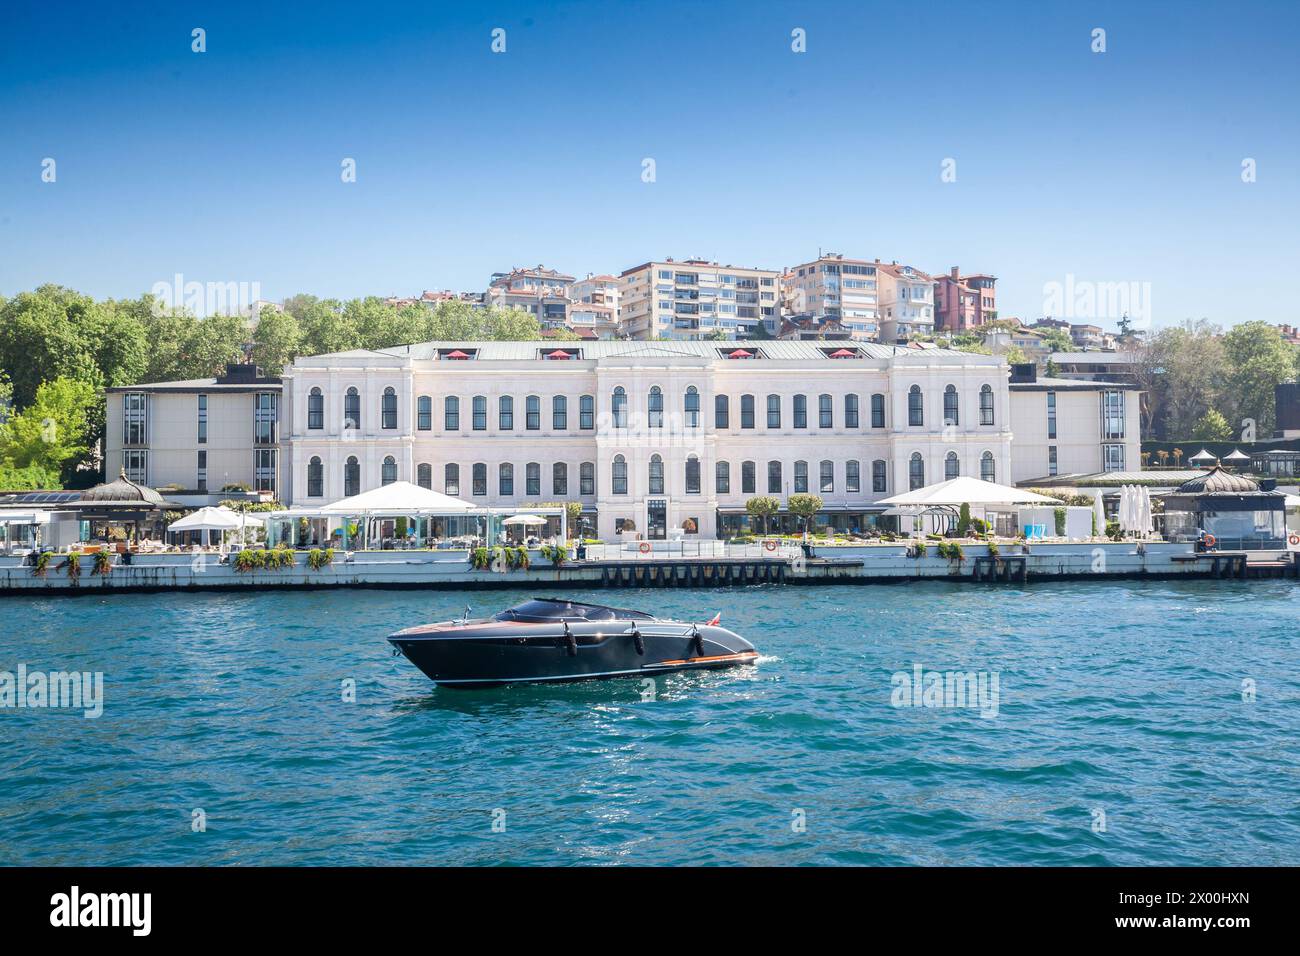 Catturata in una giornata serena, questa vivida immagine di Istanbul presenta un sontuoso yacht che naviga lungo il Bosforo. Dietro di essa, un elegante edificio sul lungomare Foto Stock